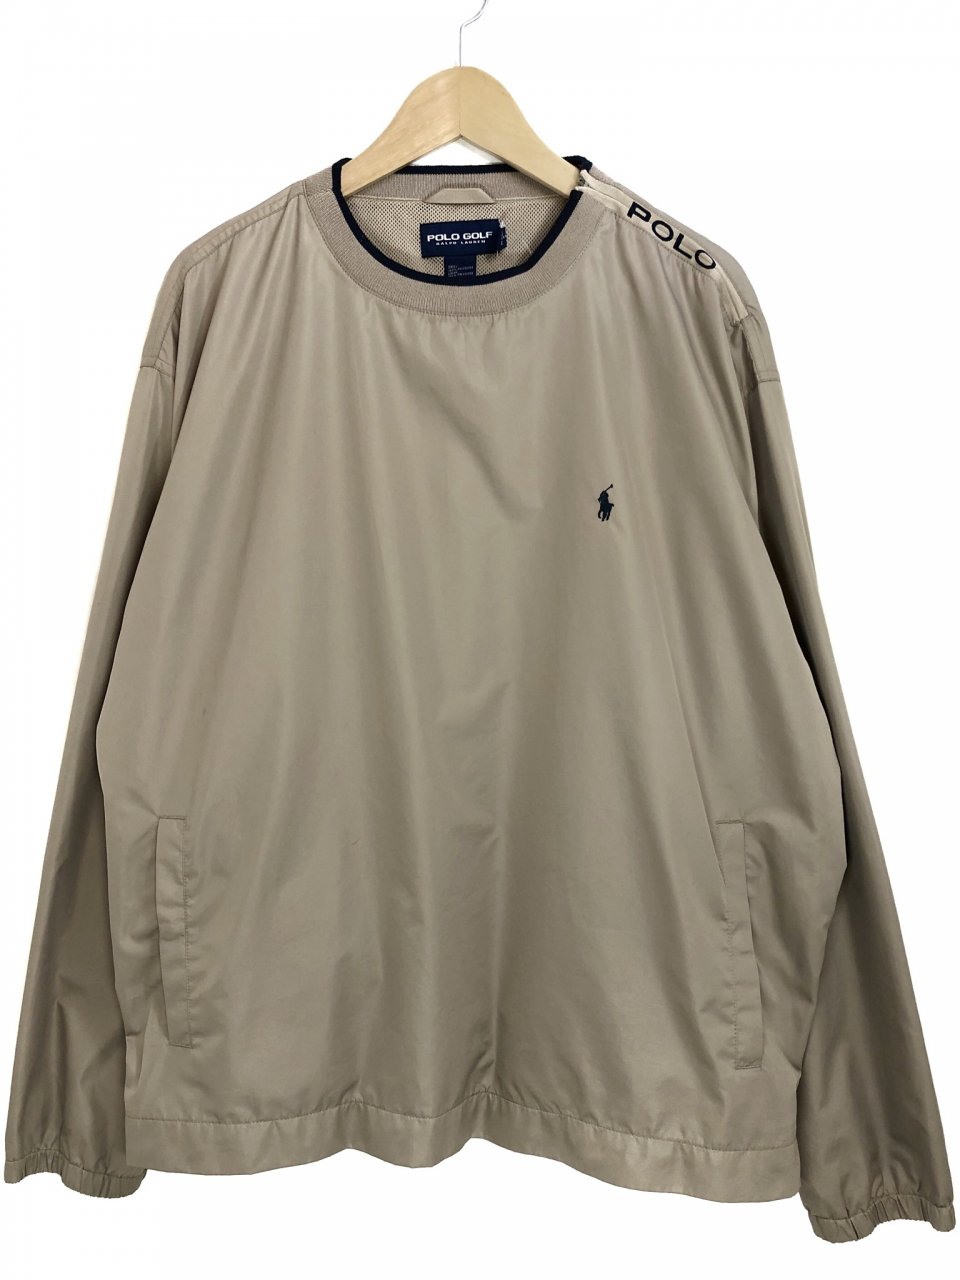 POLO GOLF Nylon Pullover Jacket ベージュ XL ポロゴルフ ナイロン